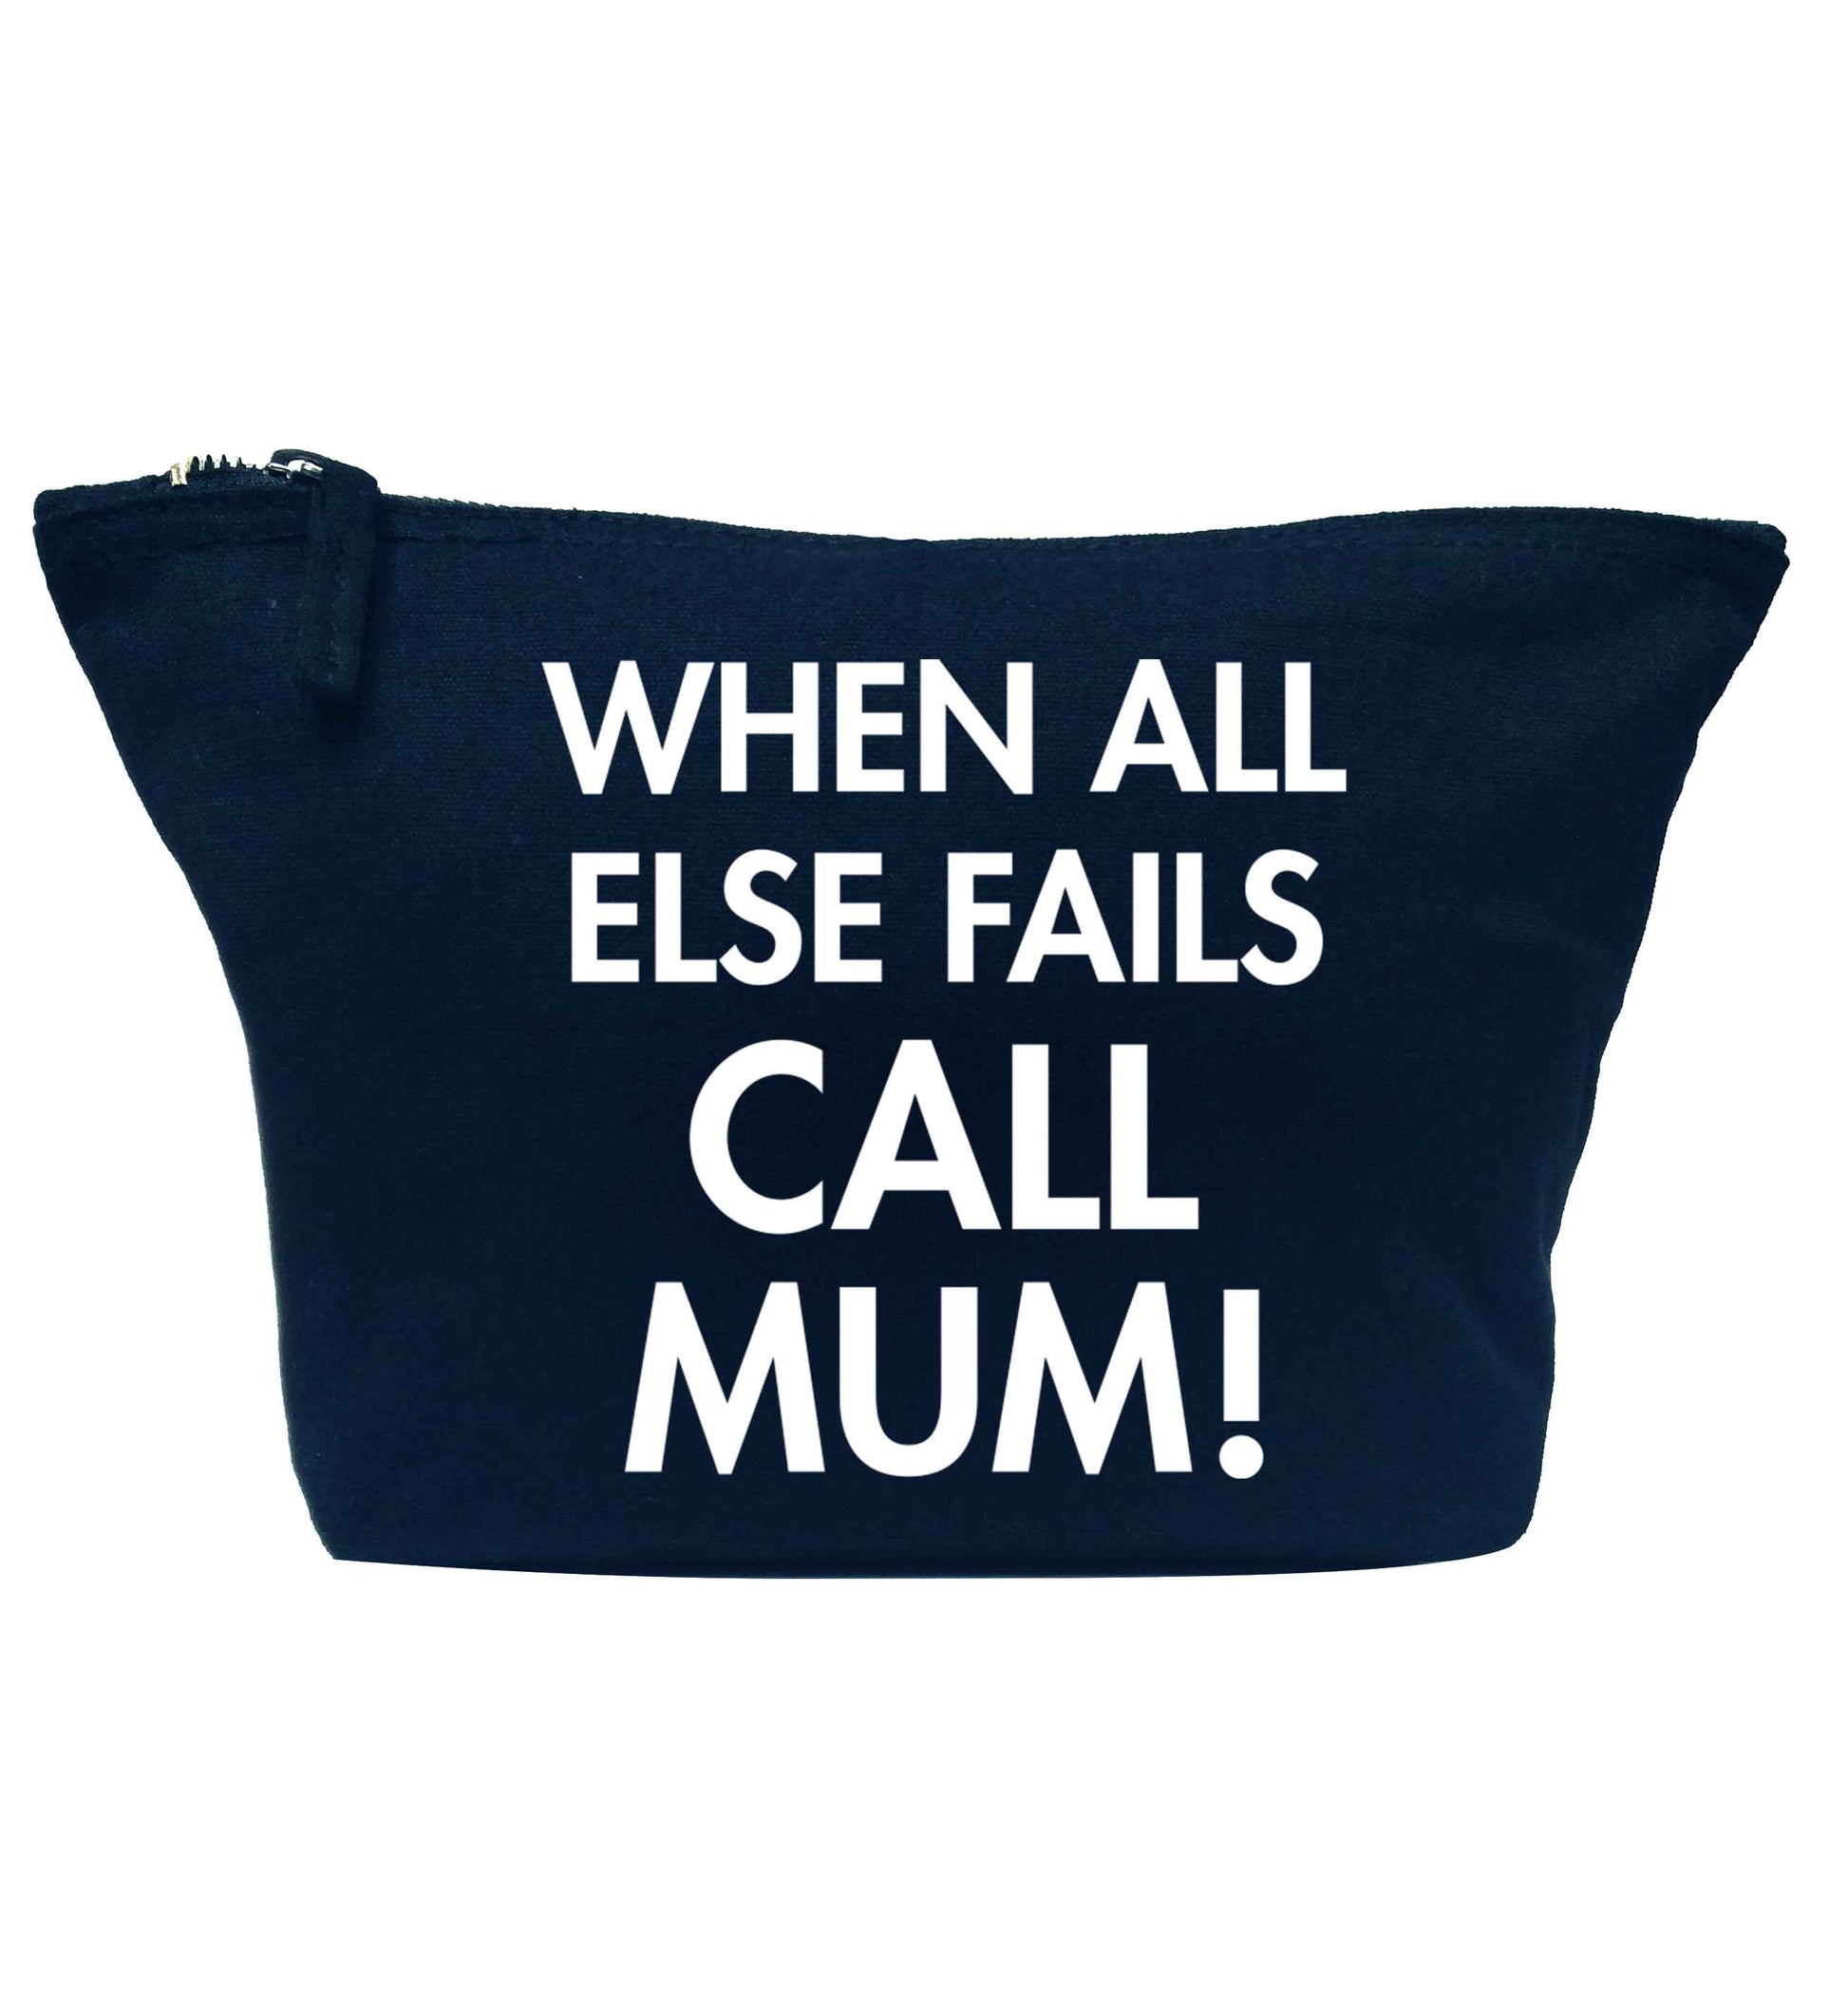 When all else fails call mum! navy makeup bag